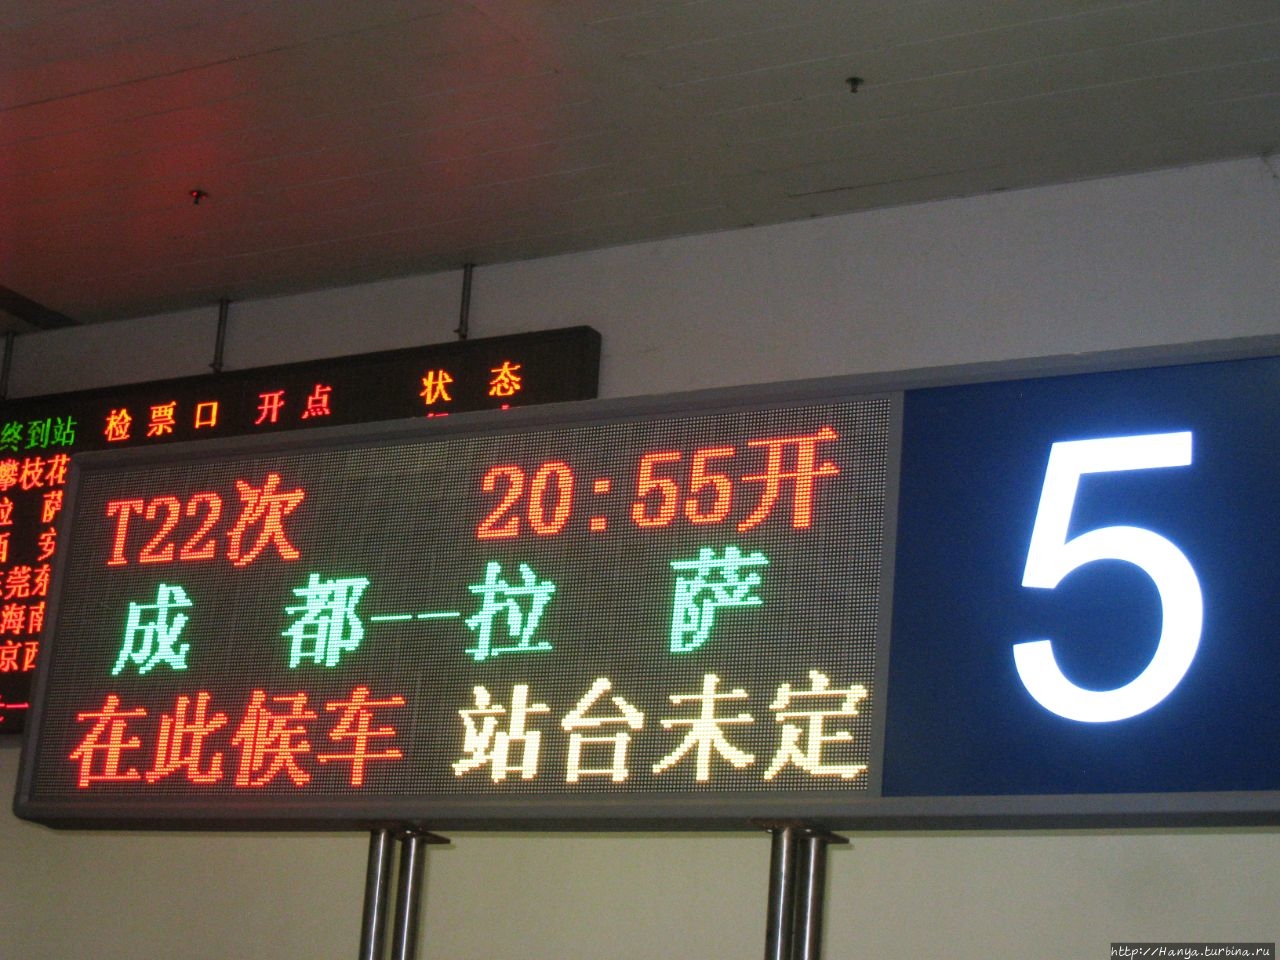 Северный железнодорожный вокзал Чэнду, Китай